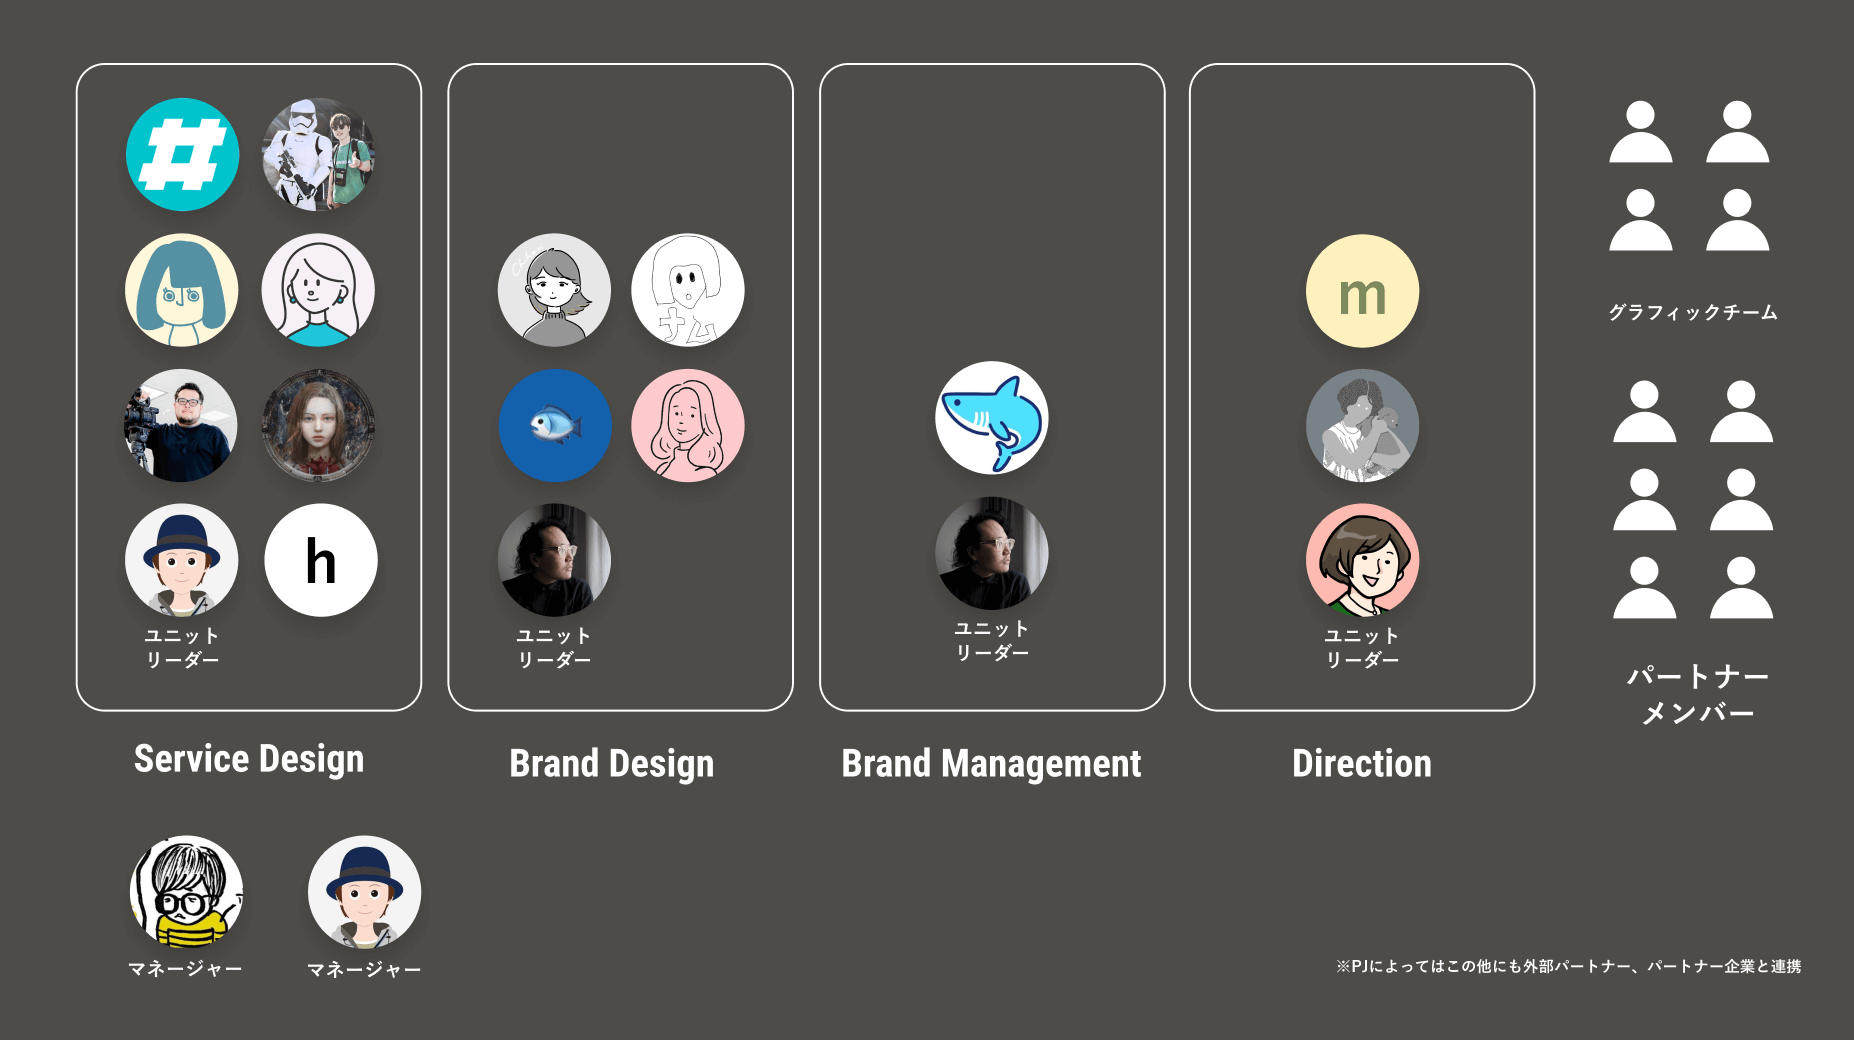 2022年4月からの、SmartHR コミュニケーションデザイングループ組織図。各人のアイコンが並んでいる。マネージャーが2名、ユニットが4つあり、その他パートナーメンバーとグラフィックチームがいる。ユニットは、Service Design、Brand Design、Brand Management、Directionの4つ。